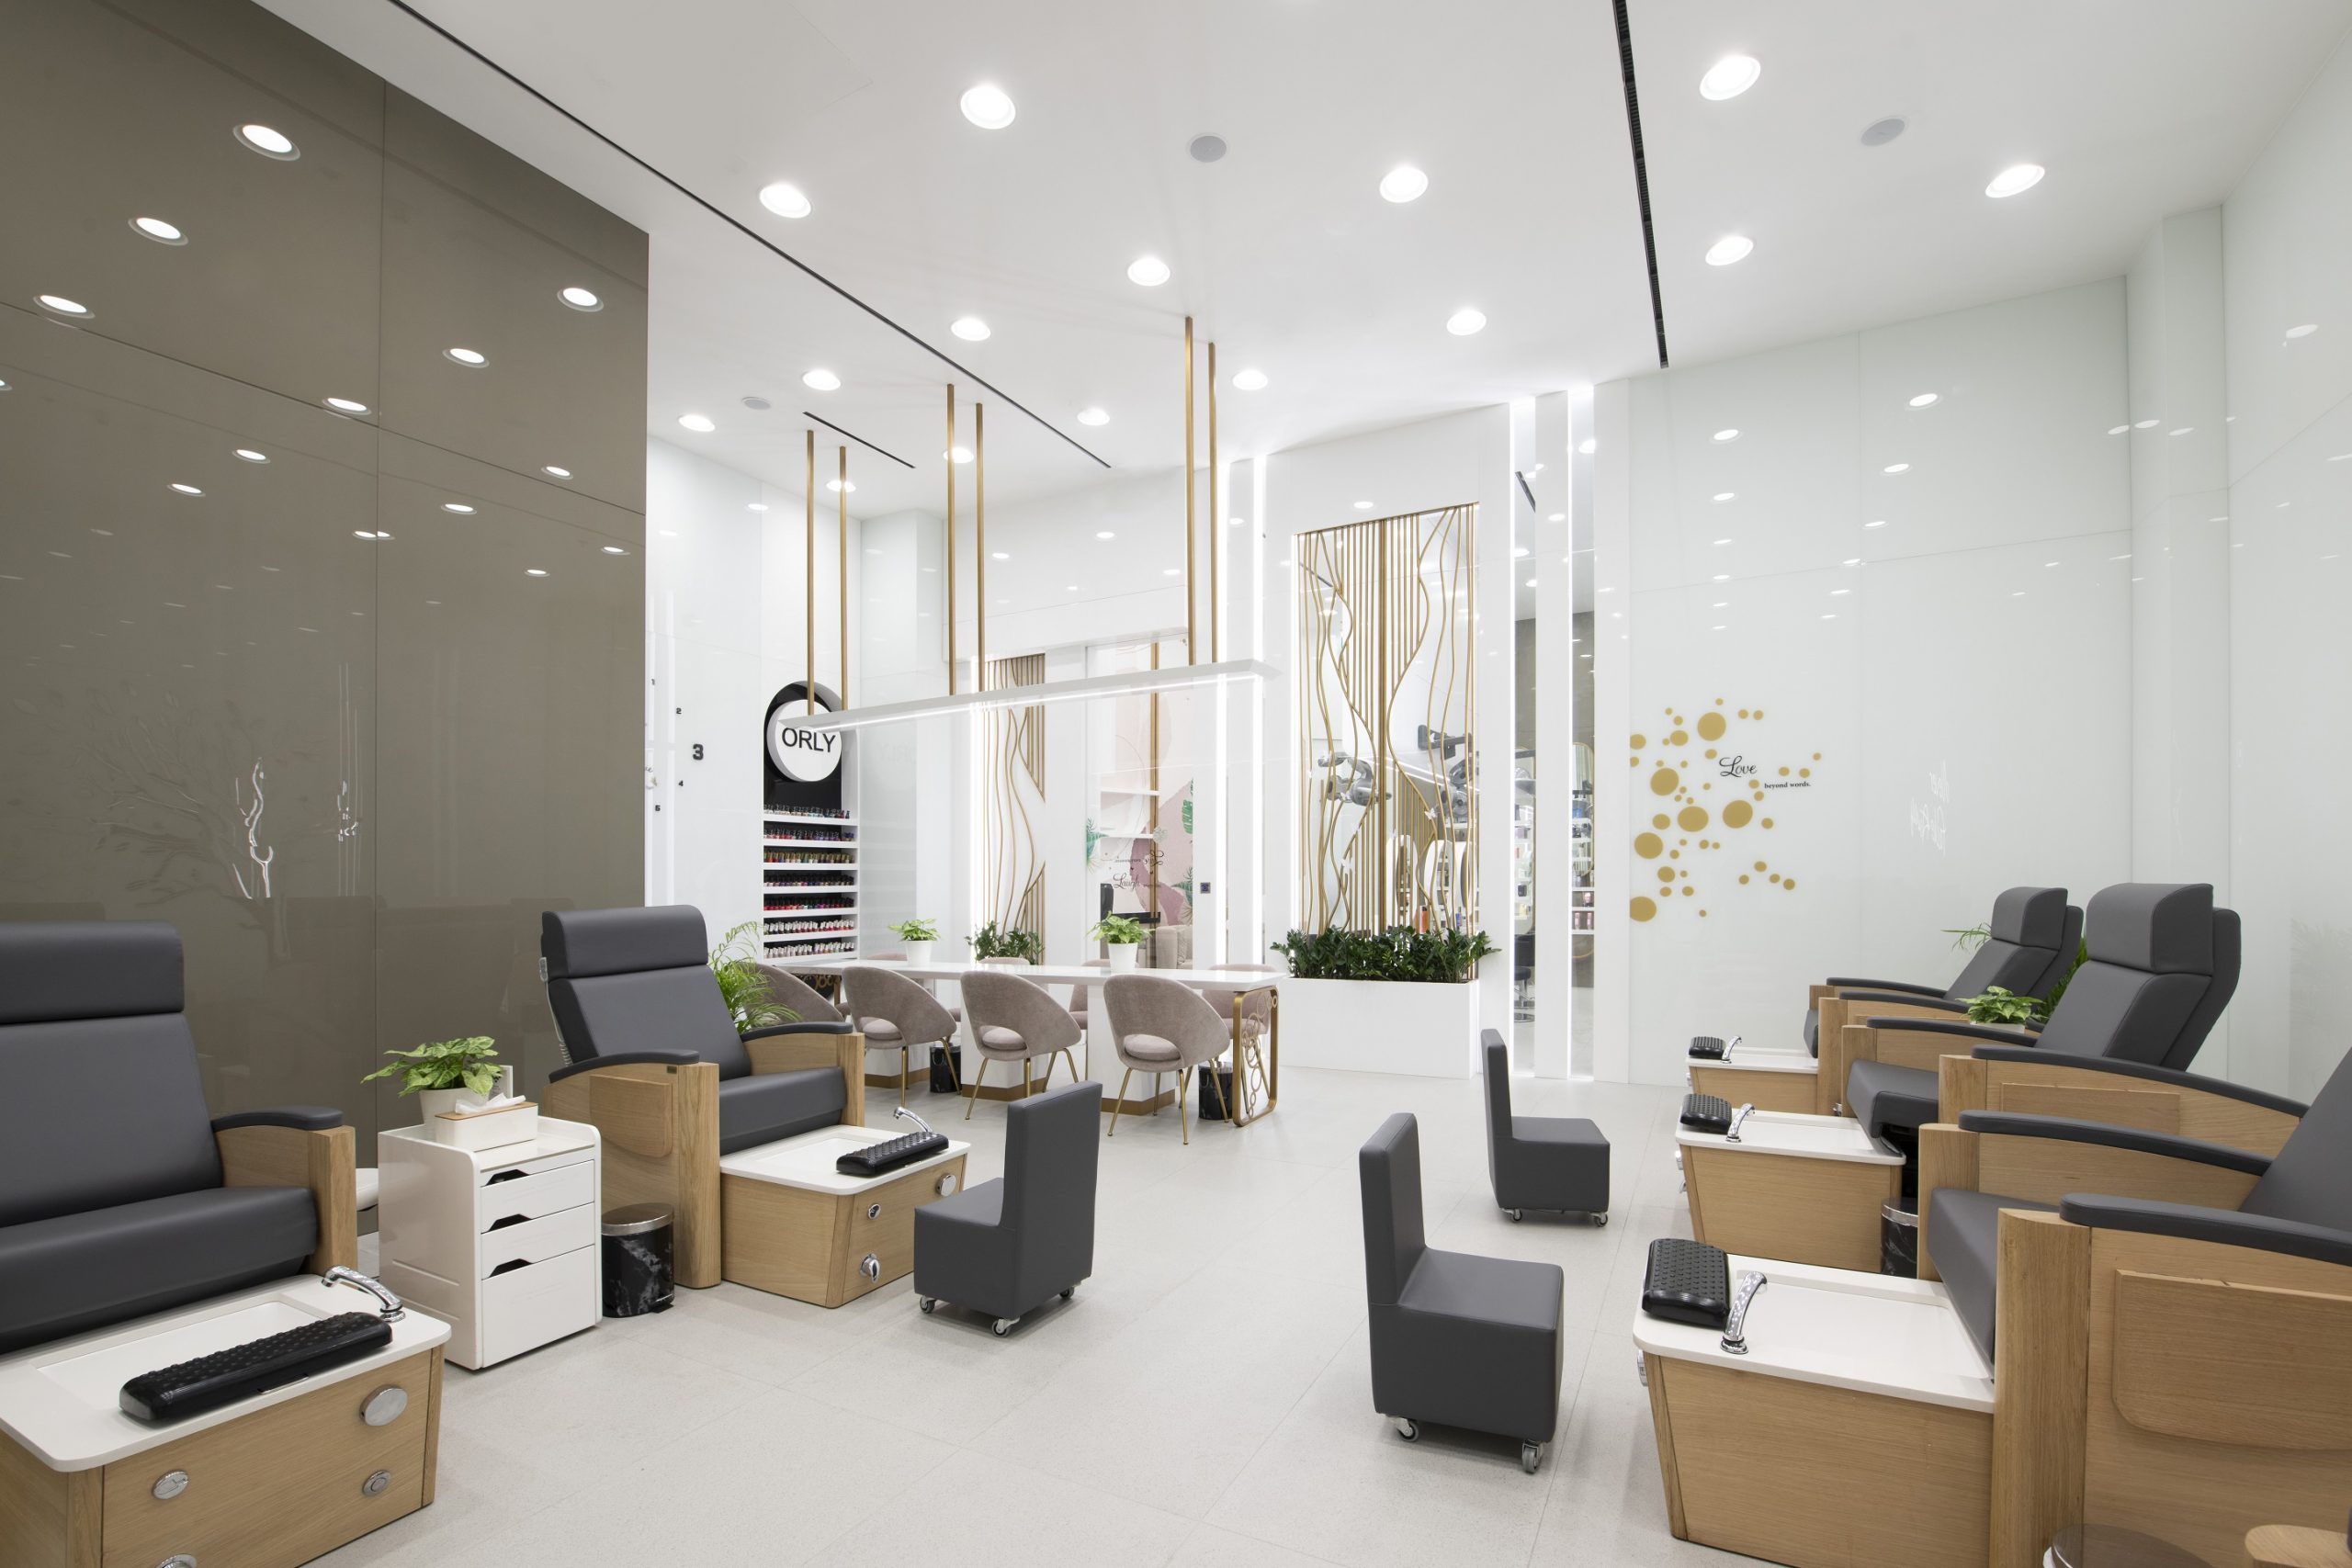 شركة WOW Beauty Salon تعيد افتتاح أكبر فروعها في دبي مول